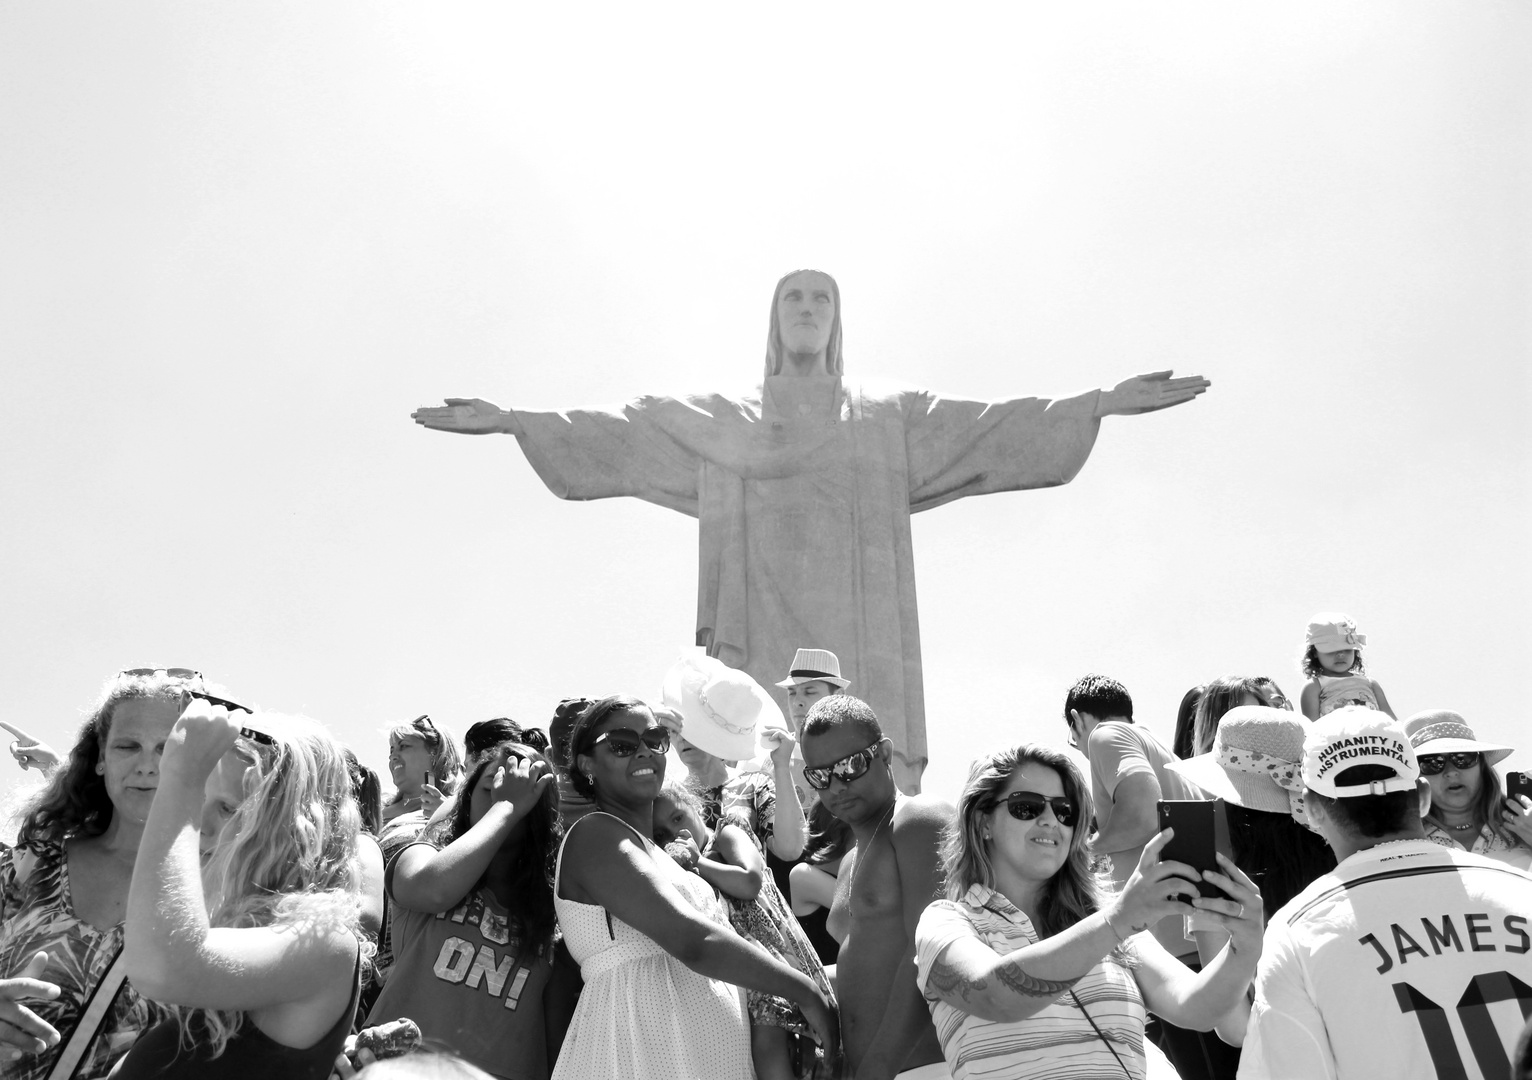 Tourists @ Cristo Redentor, Rio de Janeiro, Brazil